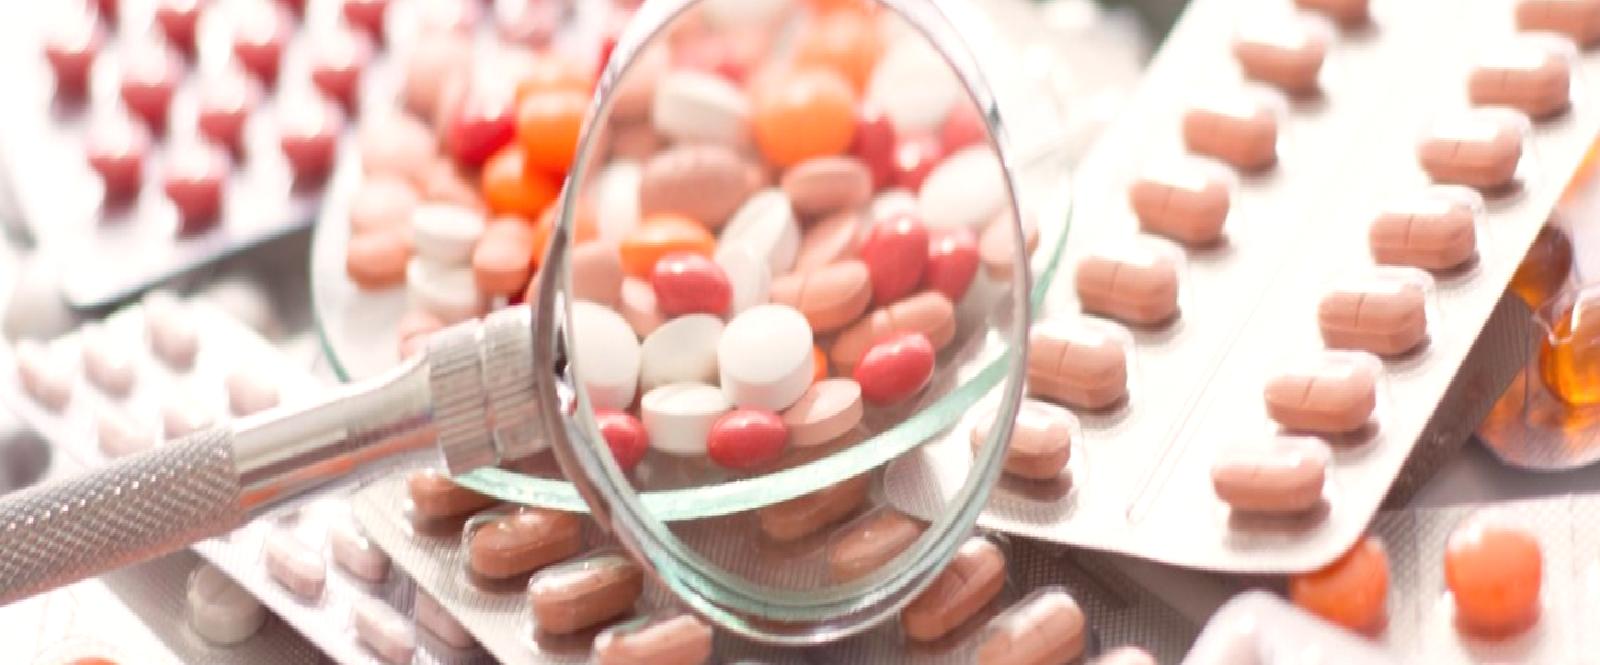 ERFARMA yerli ilaç üretimi için çalışmalarını sürdürüyor